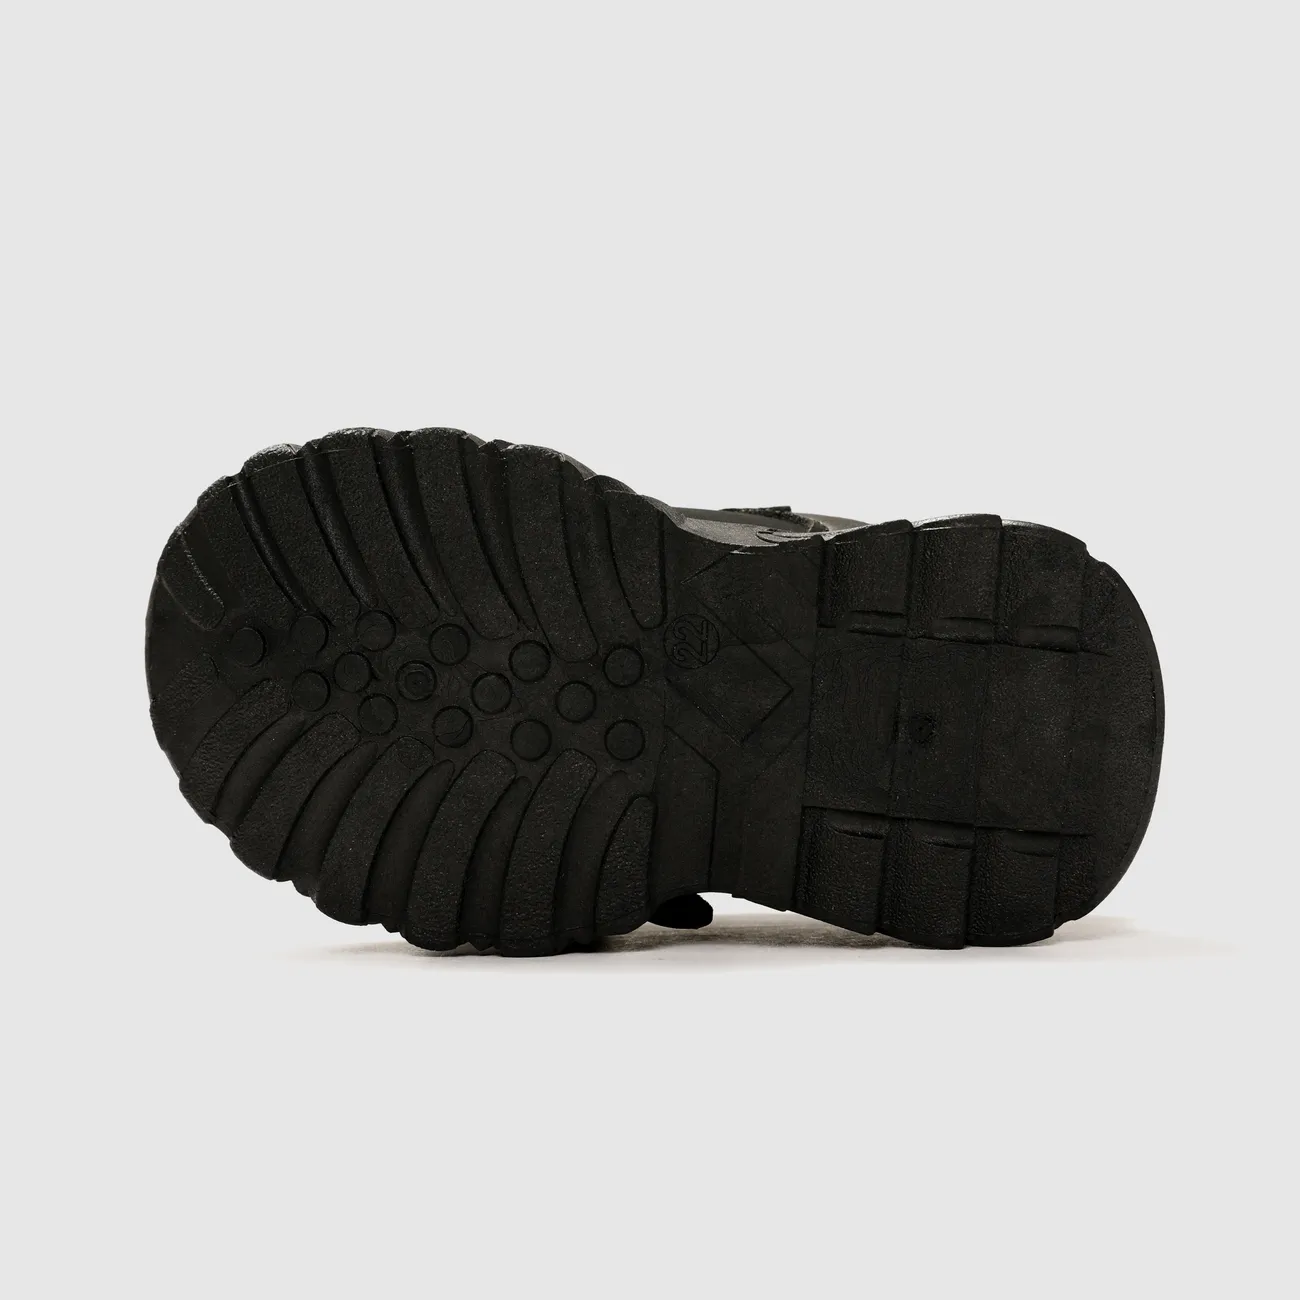 Toddler/Kids Girl/Boy Solid Hyper-Tactile 3D Bear Sports Shoes Black big image 1